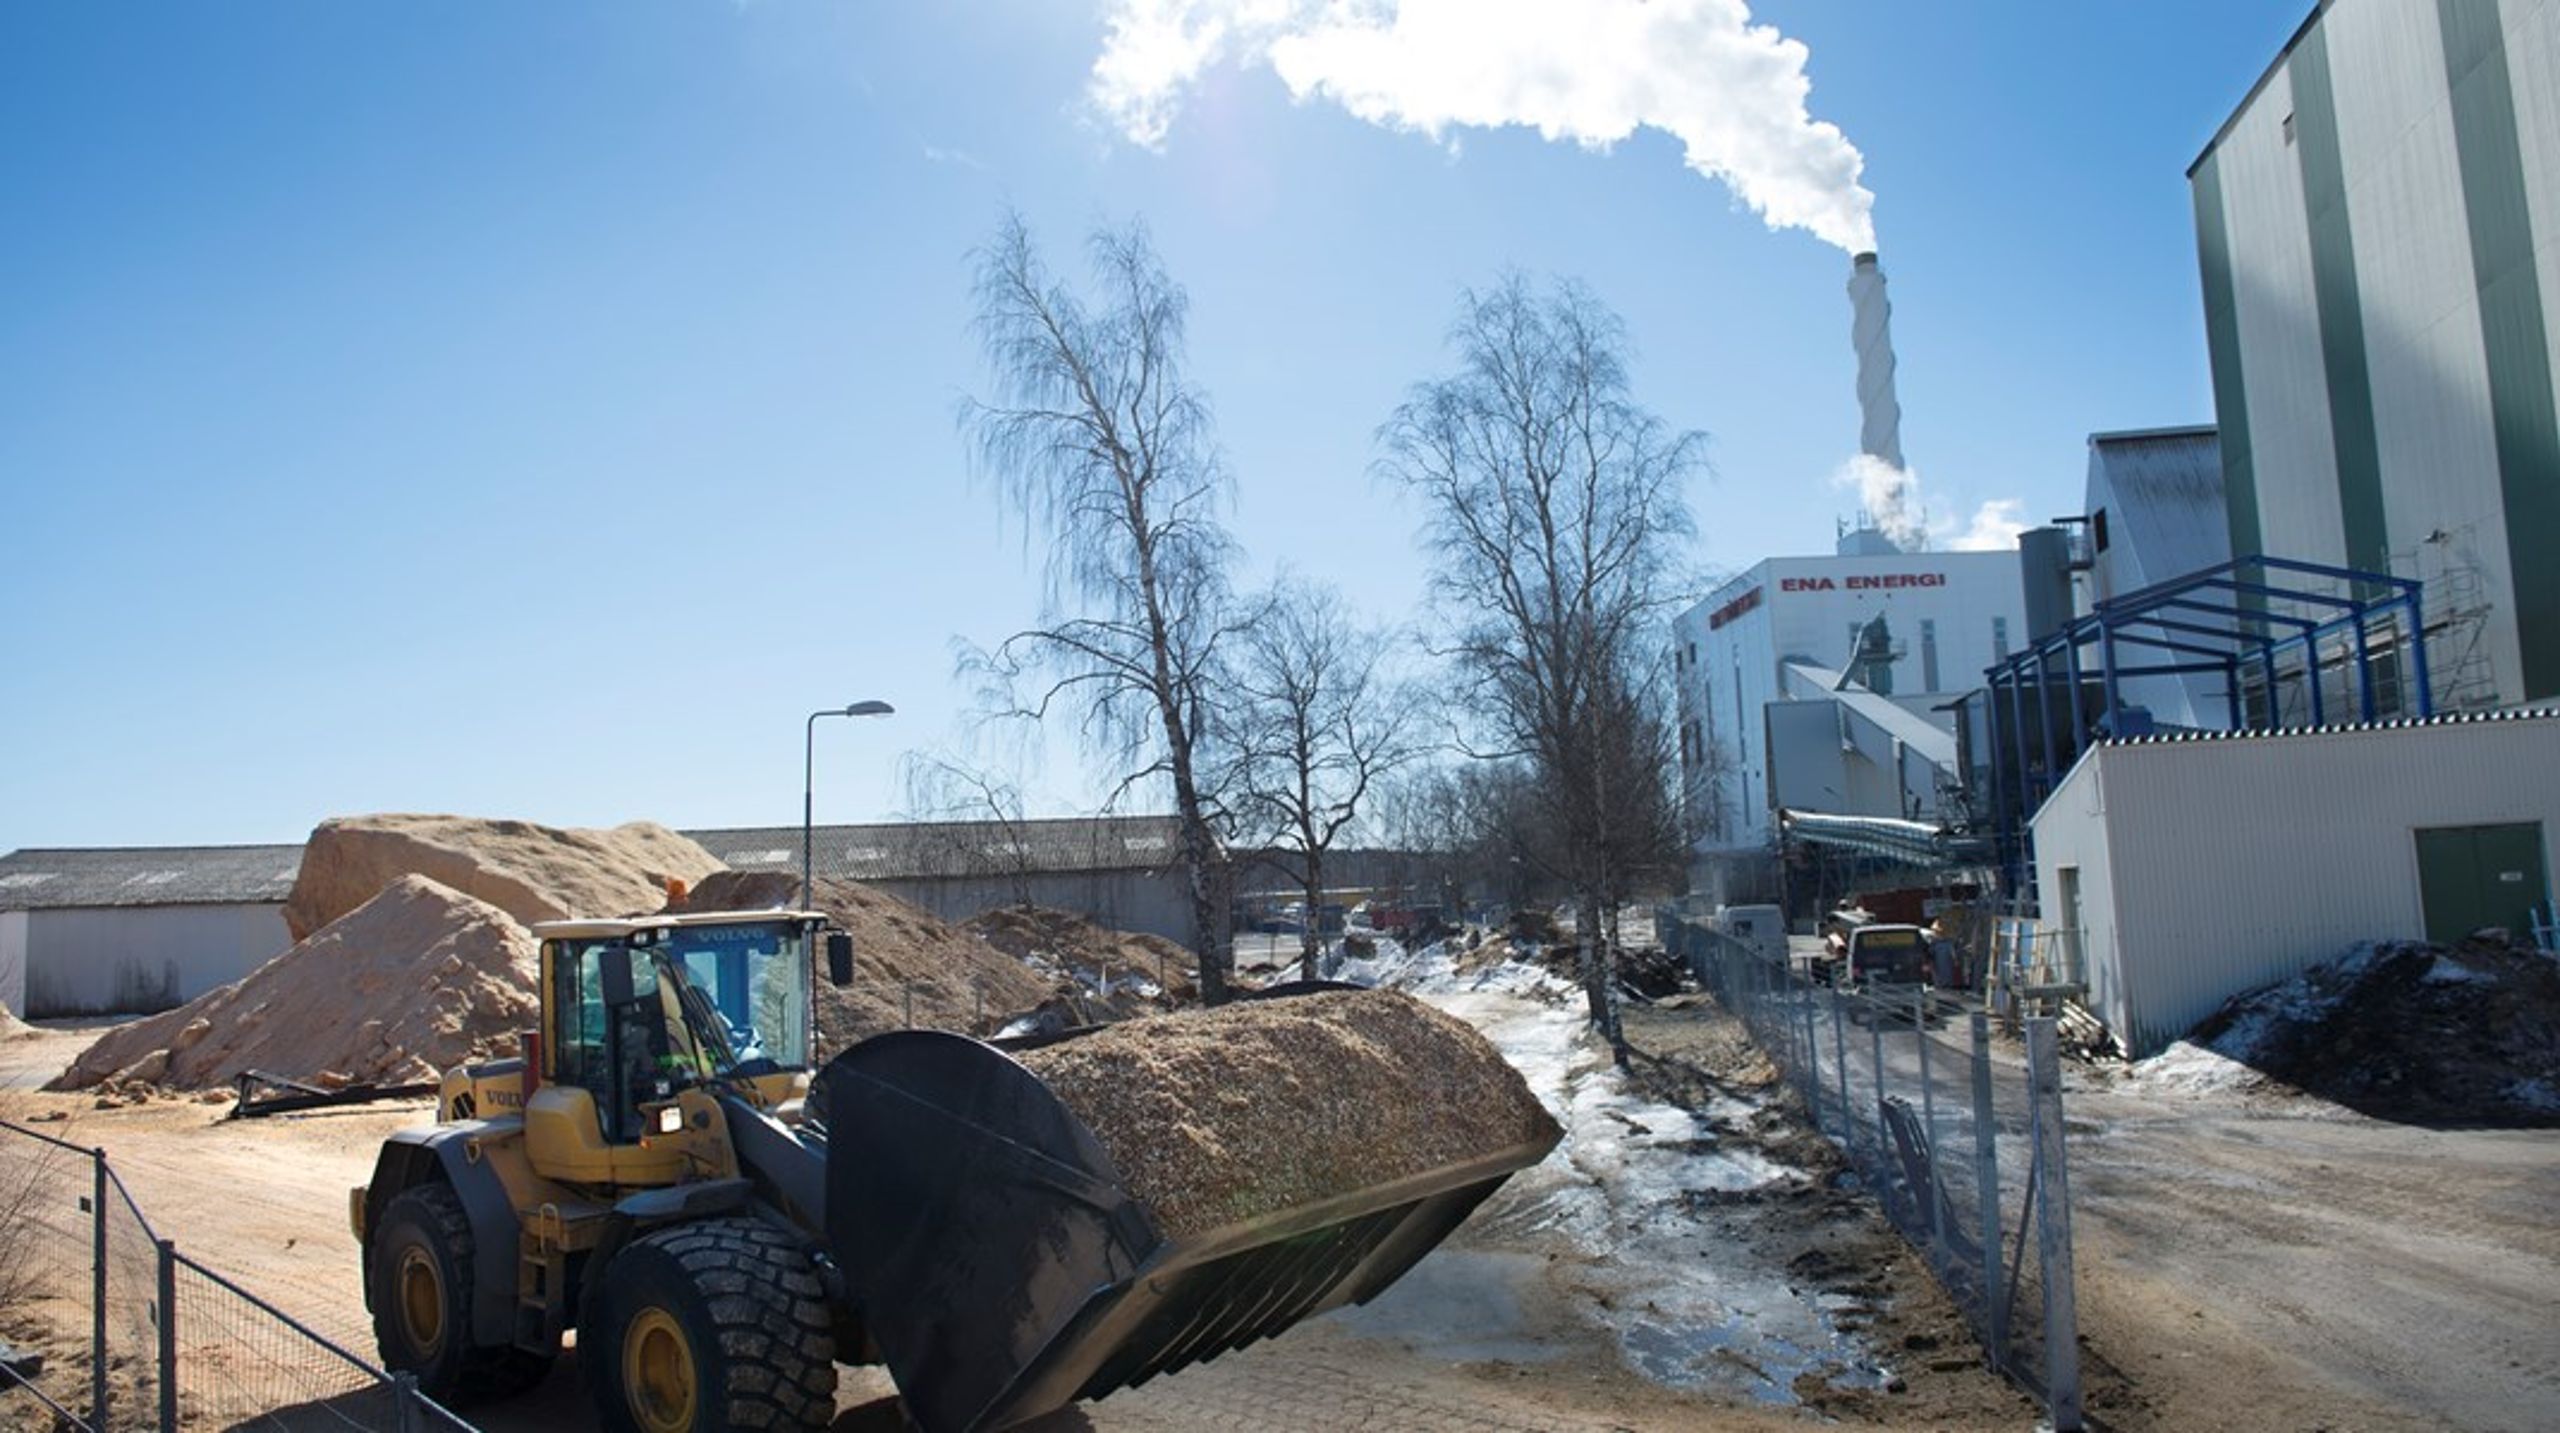 Sex partier i riksdagen kräver flera förändringar i synsättet på skogsbruk och bioenergi för att Sverige ska kunna acceptera en kompromiss. <br>